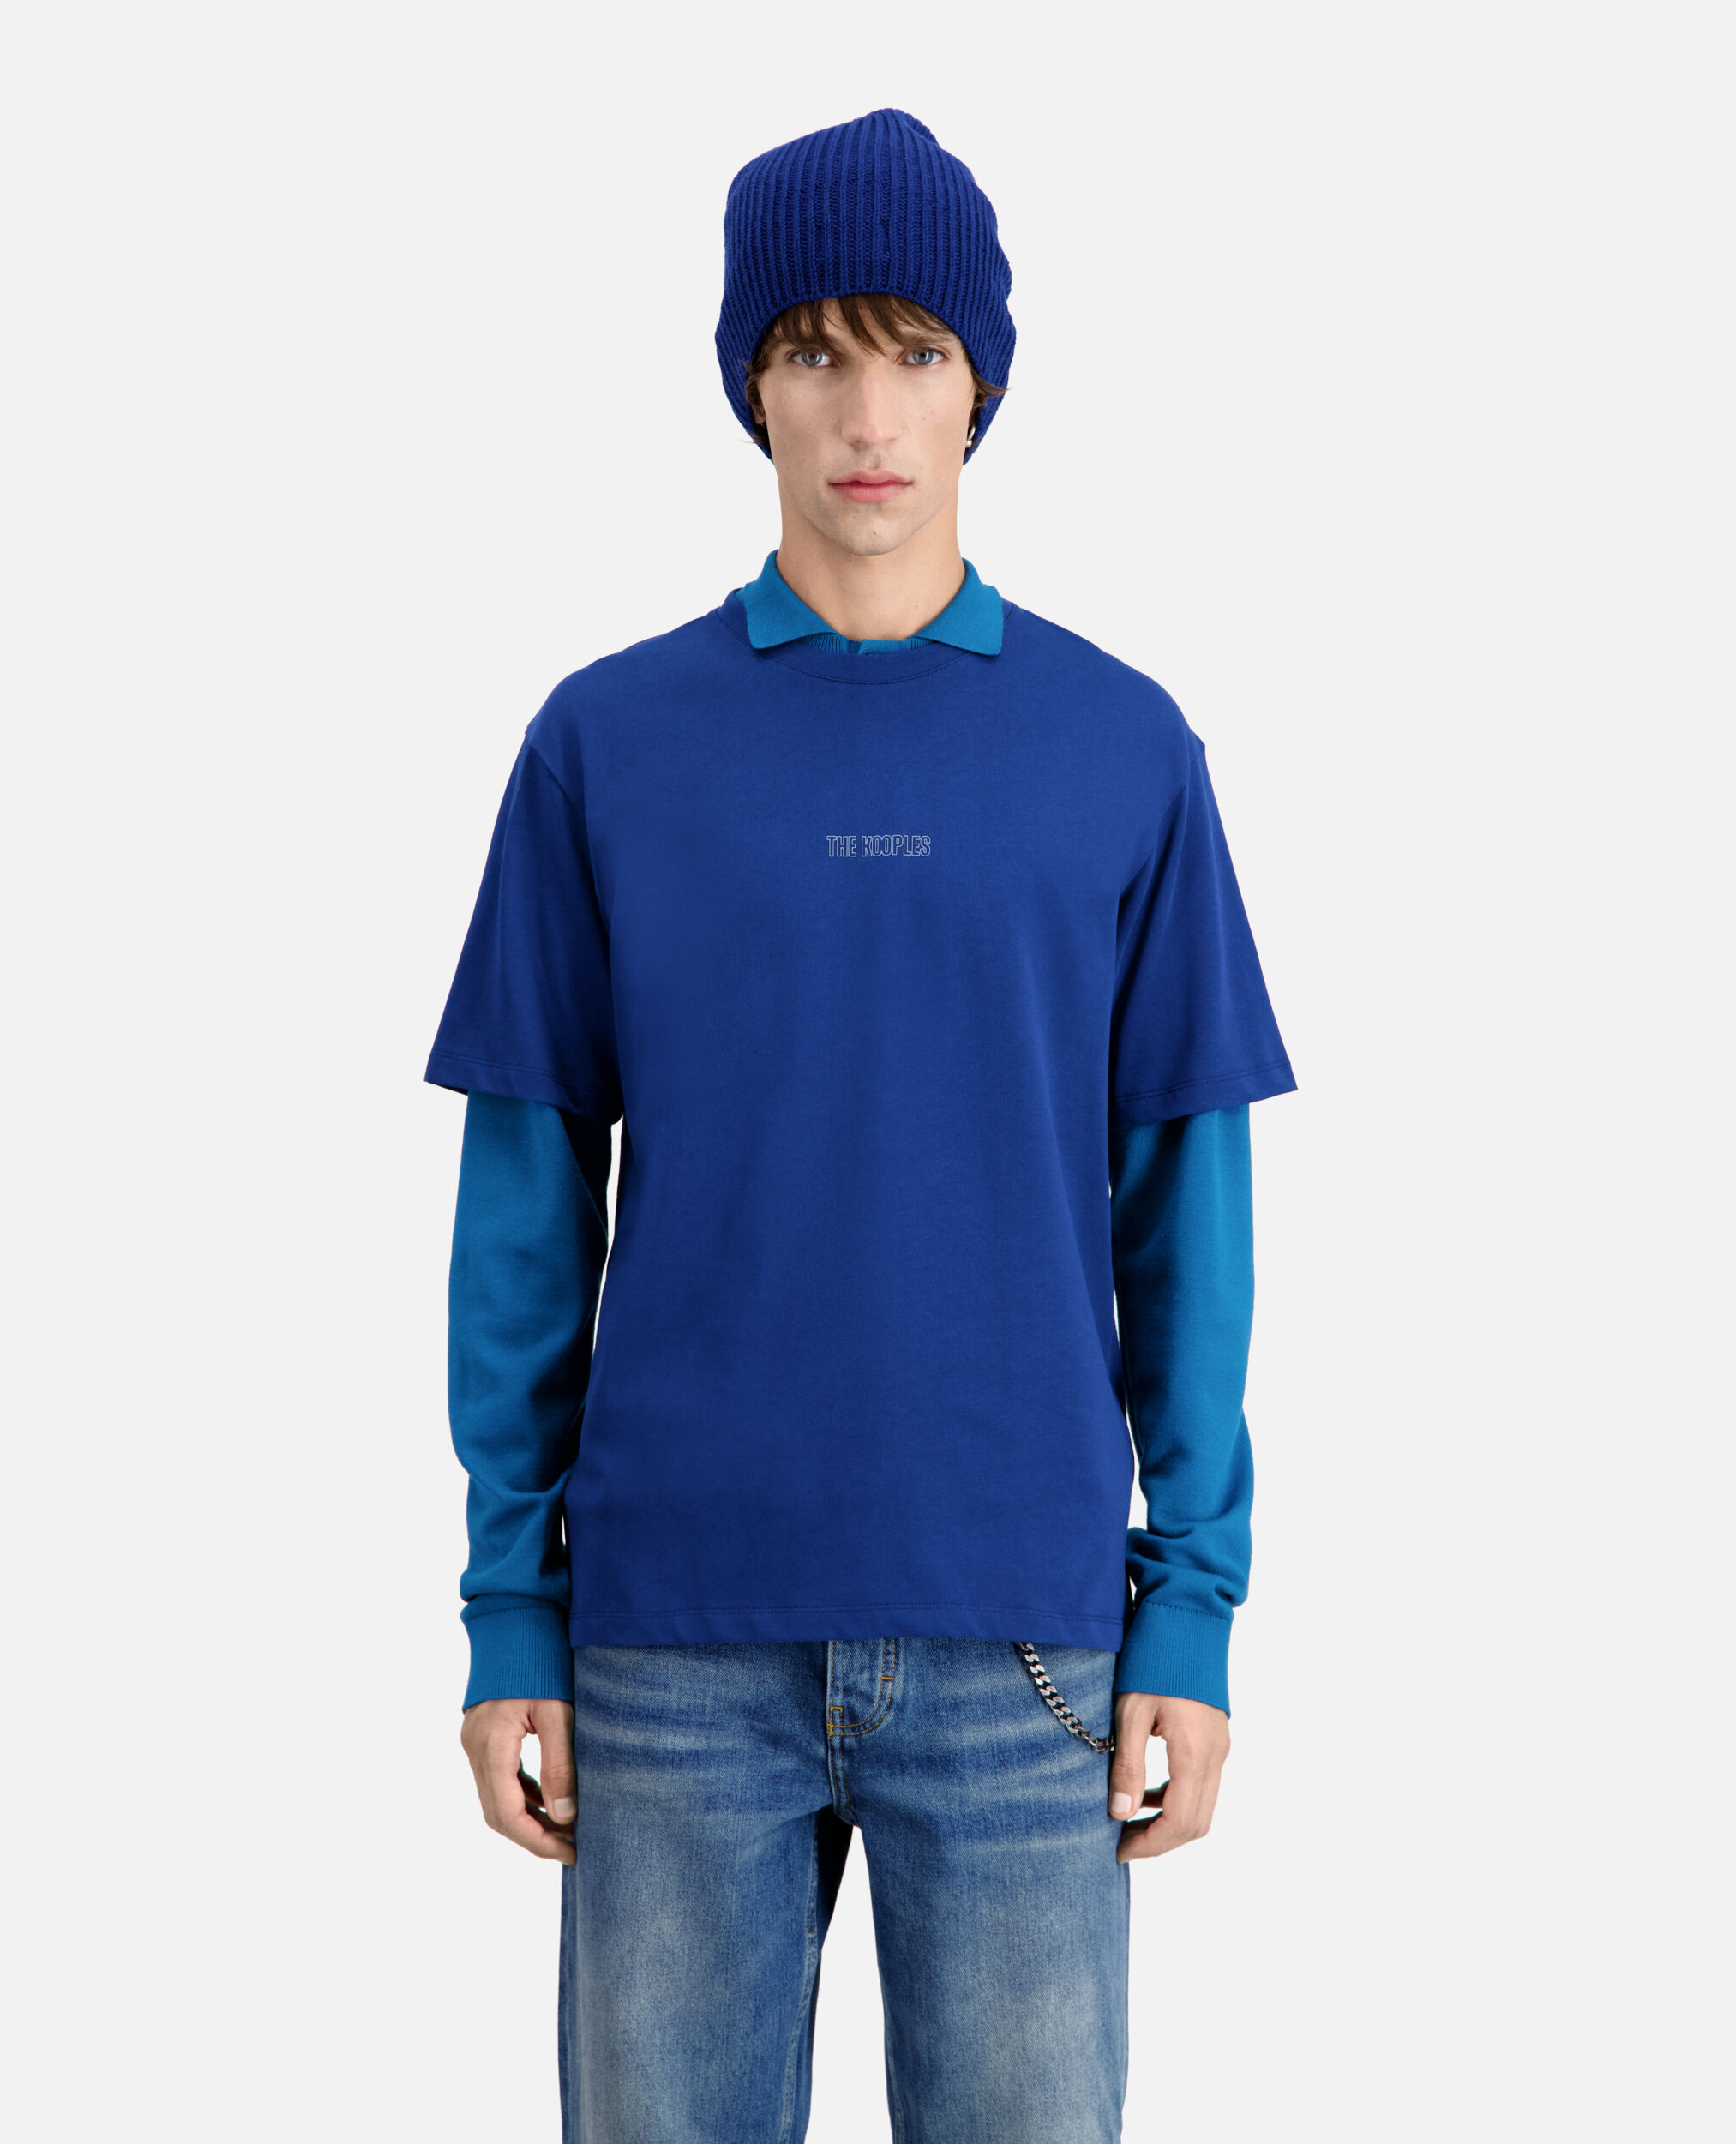 Leuchtend blaues T-Shirt Herren mit Logo, ROYAL BLUE - DARK NAVY, hi-res image number null